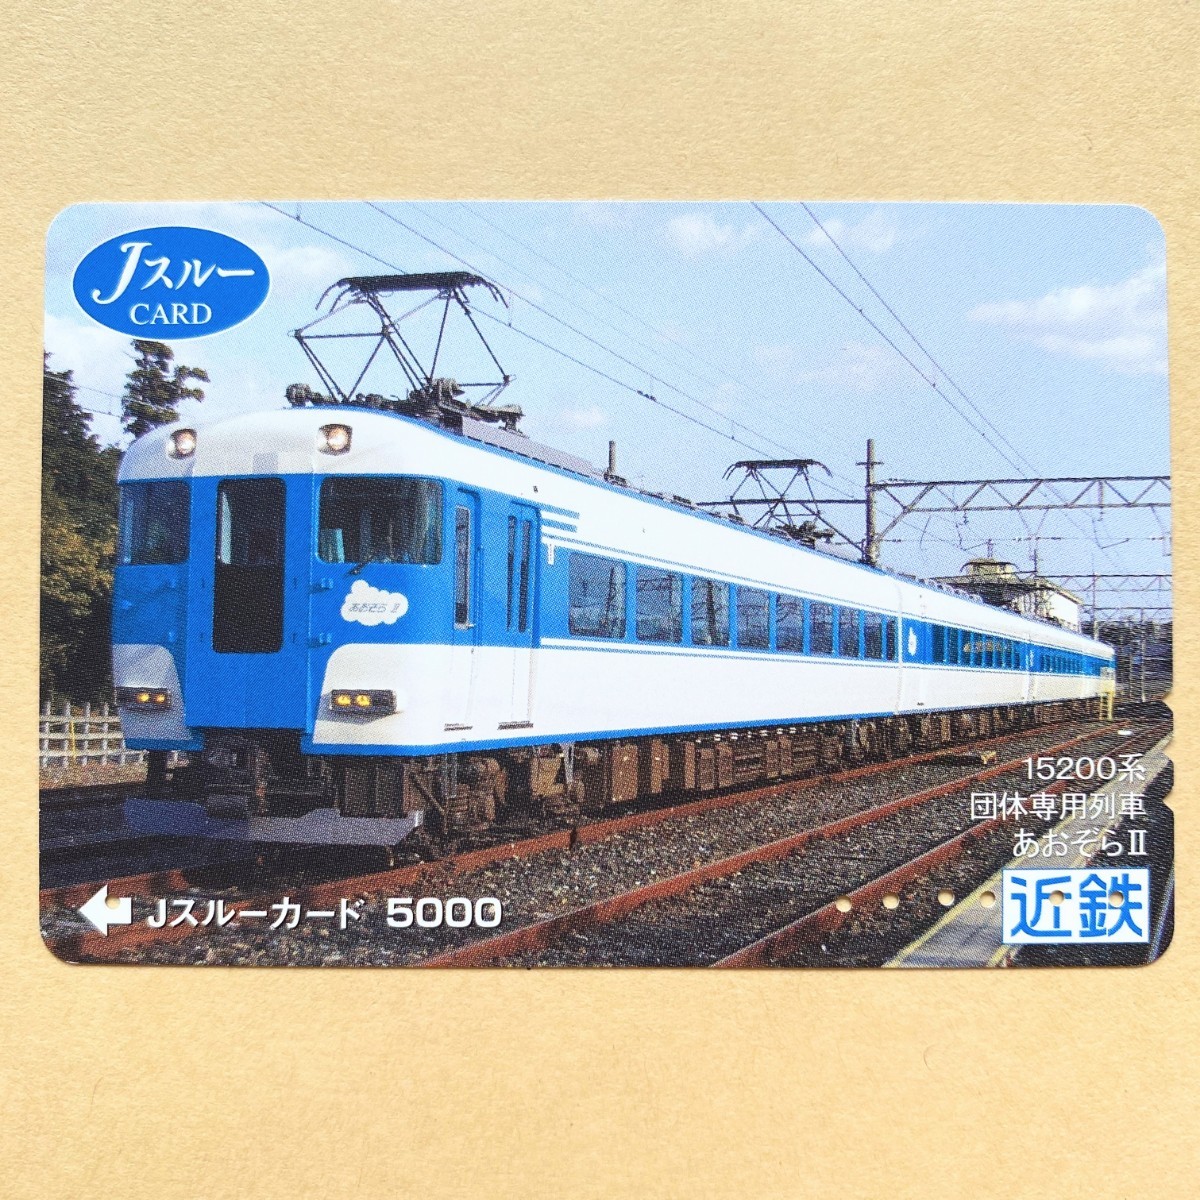 [ использованный ] Js Roo карта близко металлический Kinki Япония железная дорога 15200 серия группа специальный ряд машина ....Ⅱ